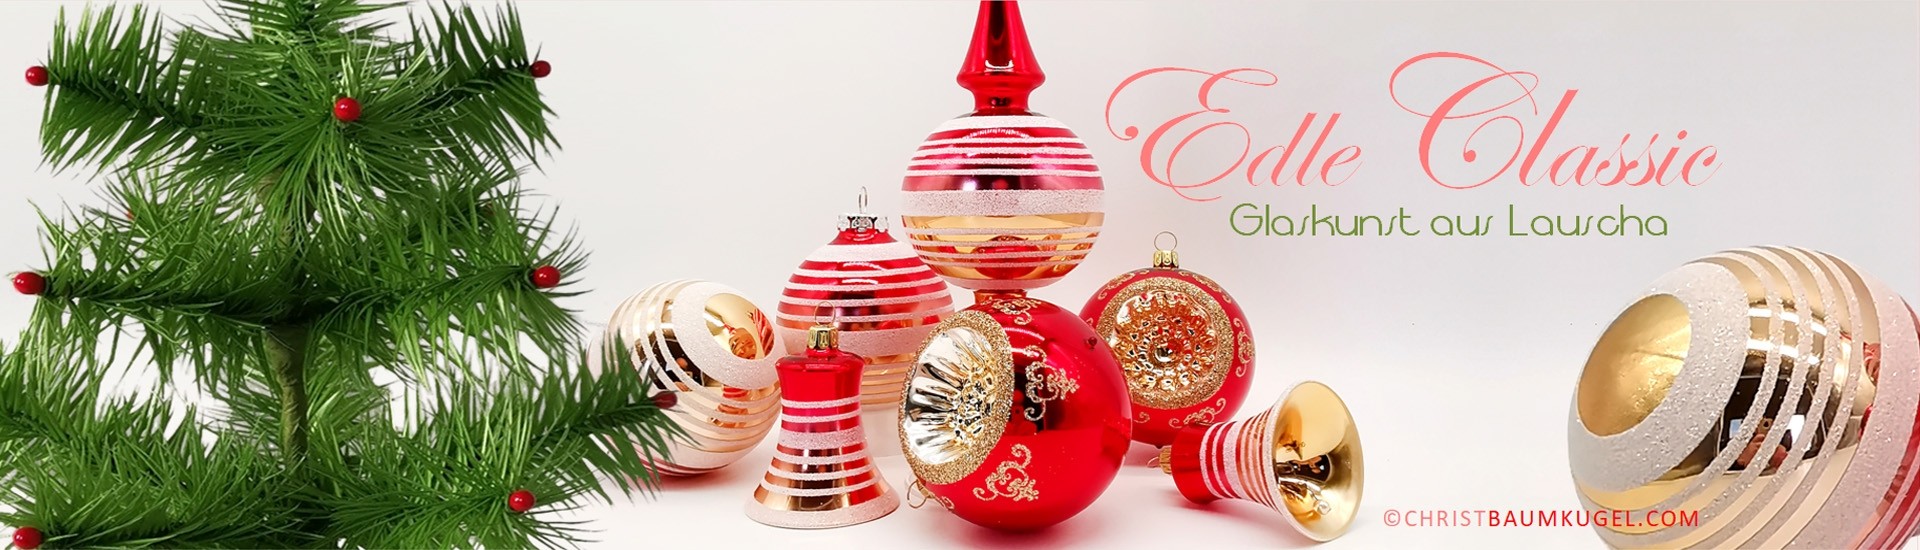 Handgefertigter Glas Christbaumschmuck, Christbaumkugeln, besondere Weihnachtskugeln und Weihnachtsdeko